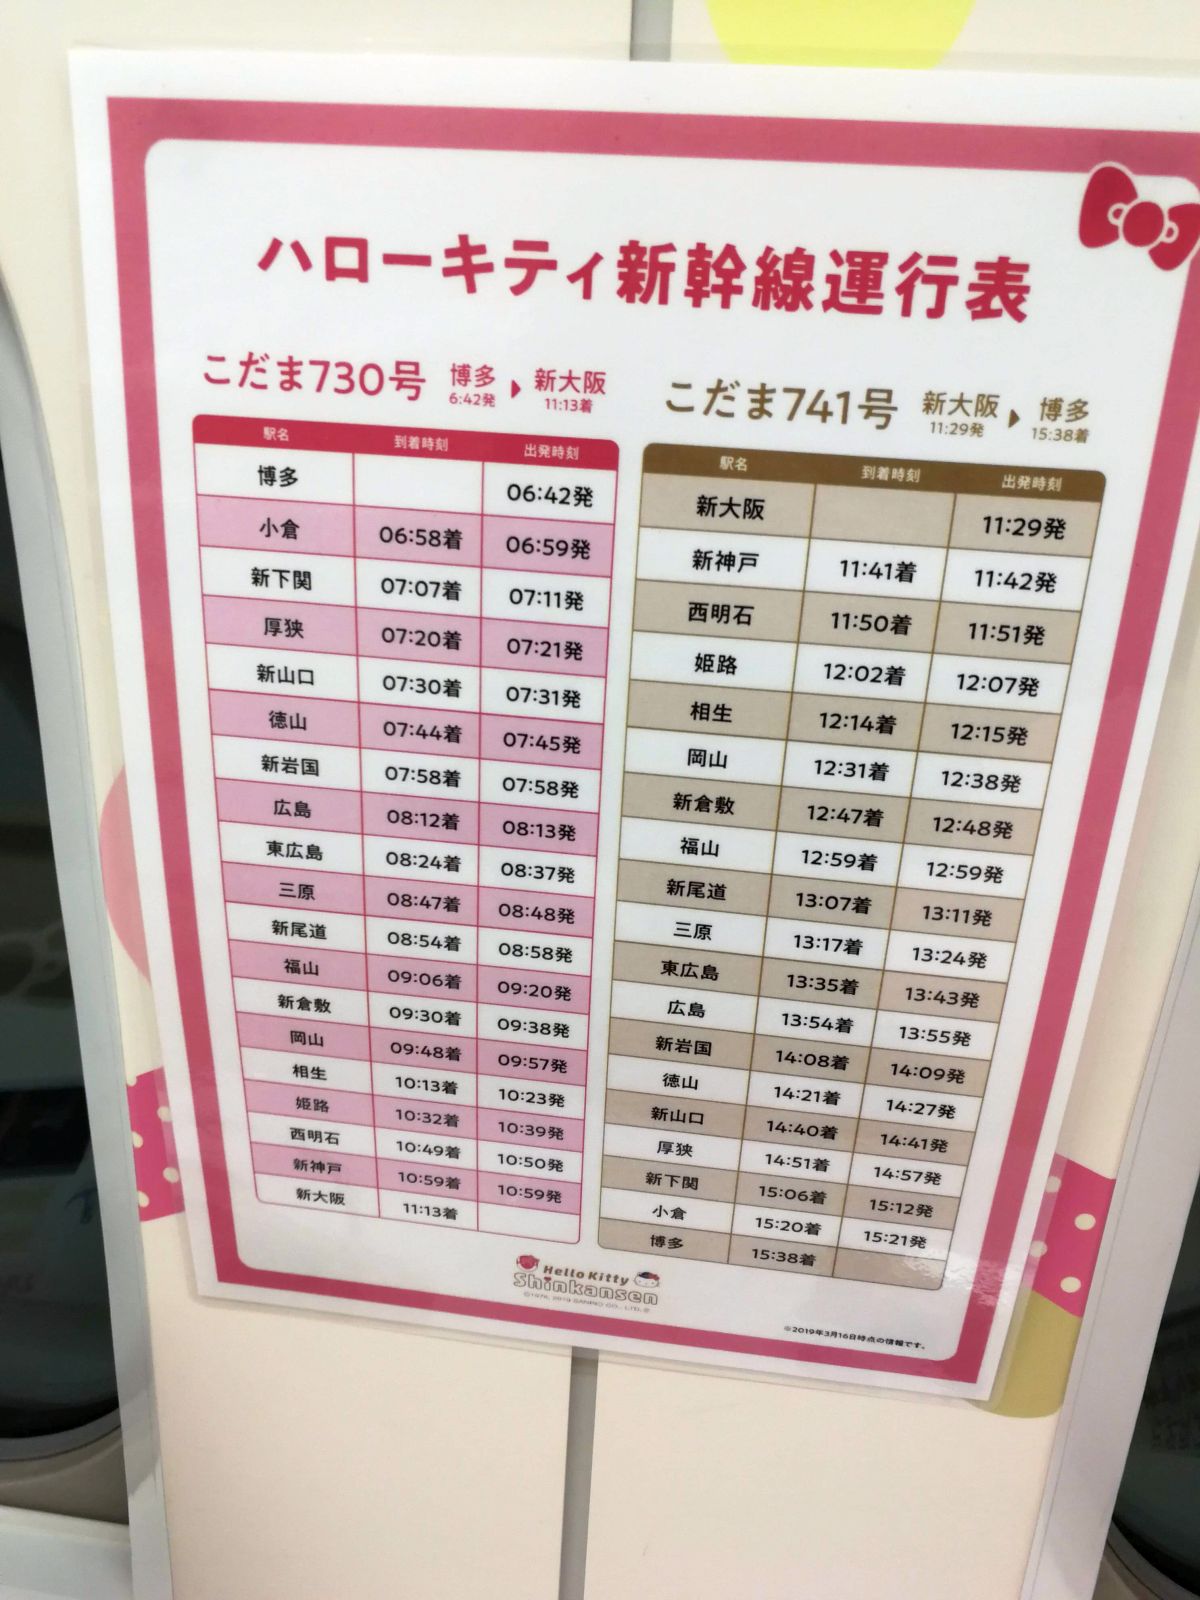 ハローキティ新幹線運行表